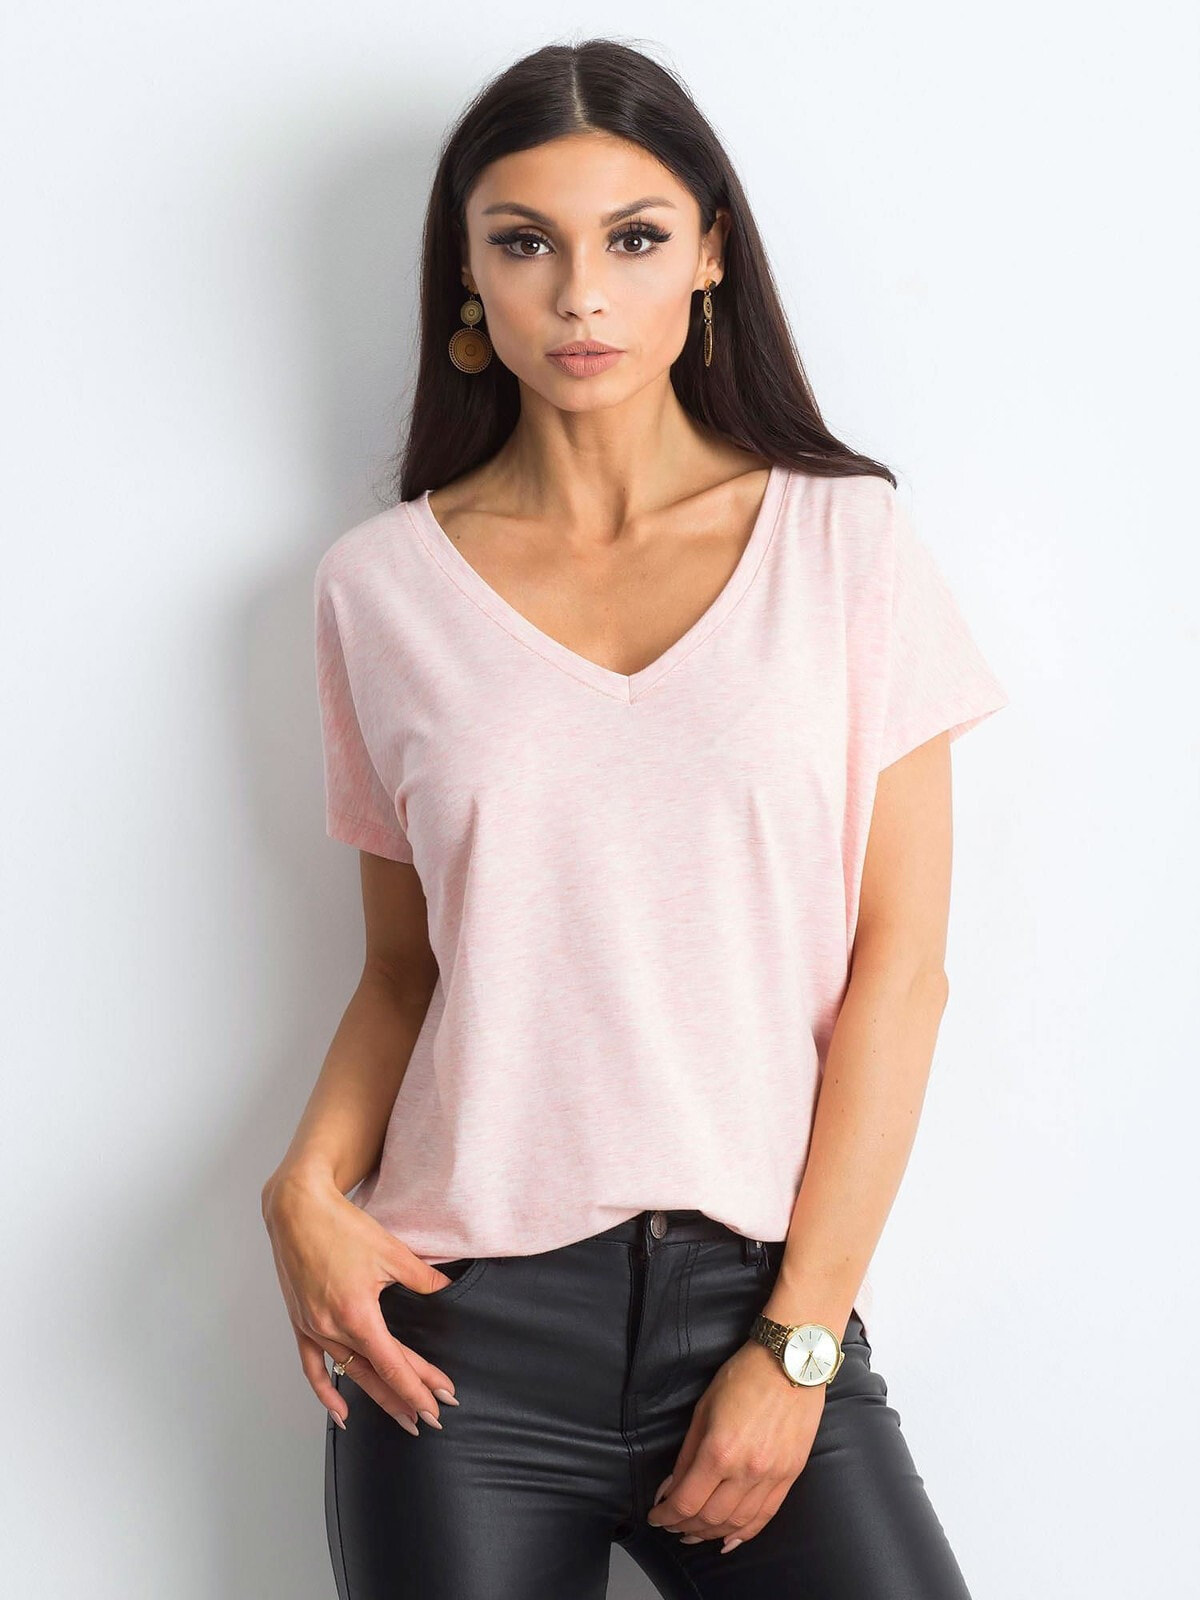 Женская футболка с V-образным вырезом розовая Factory Price